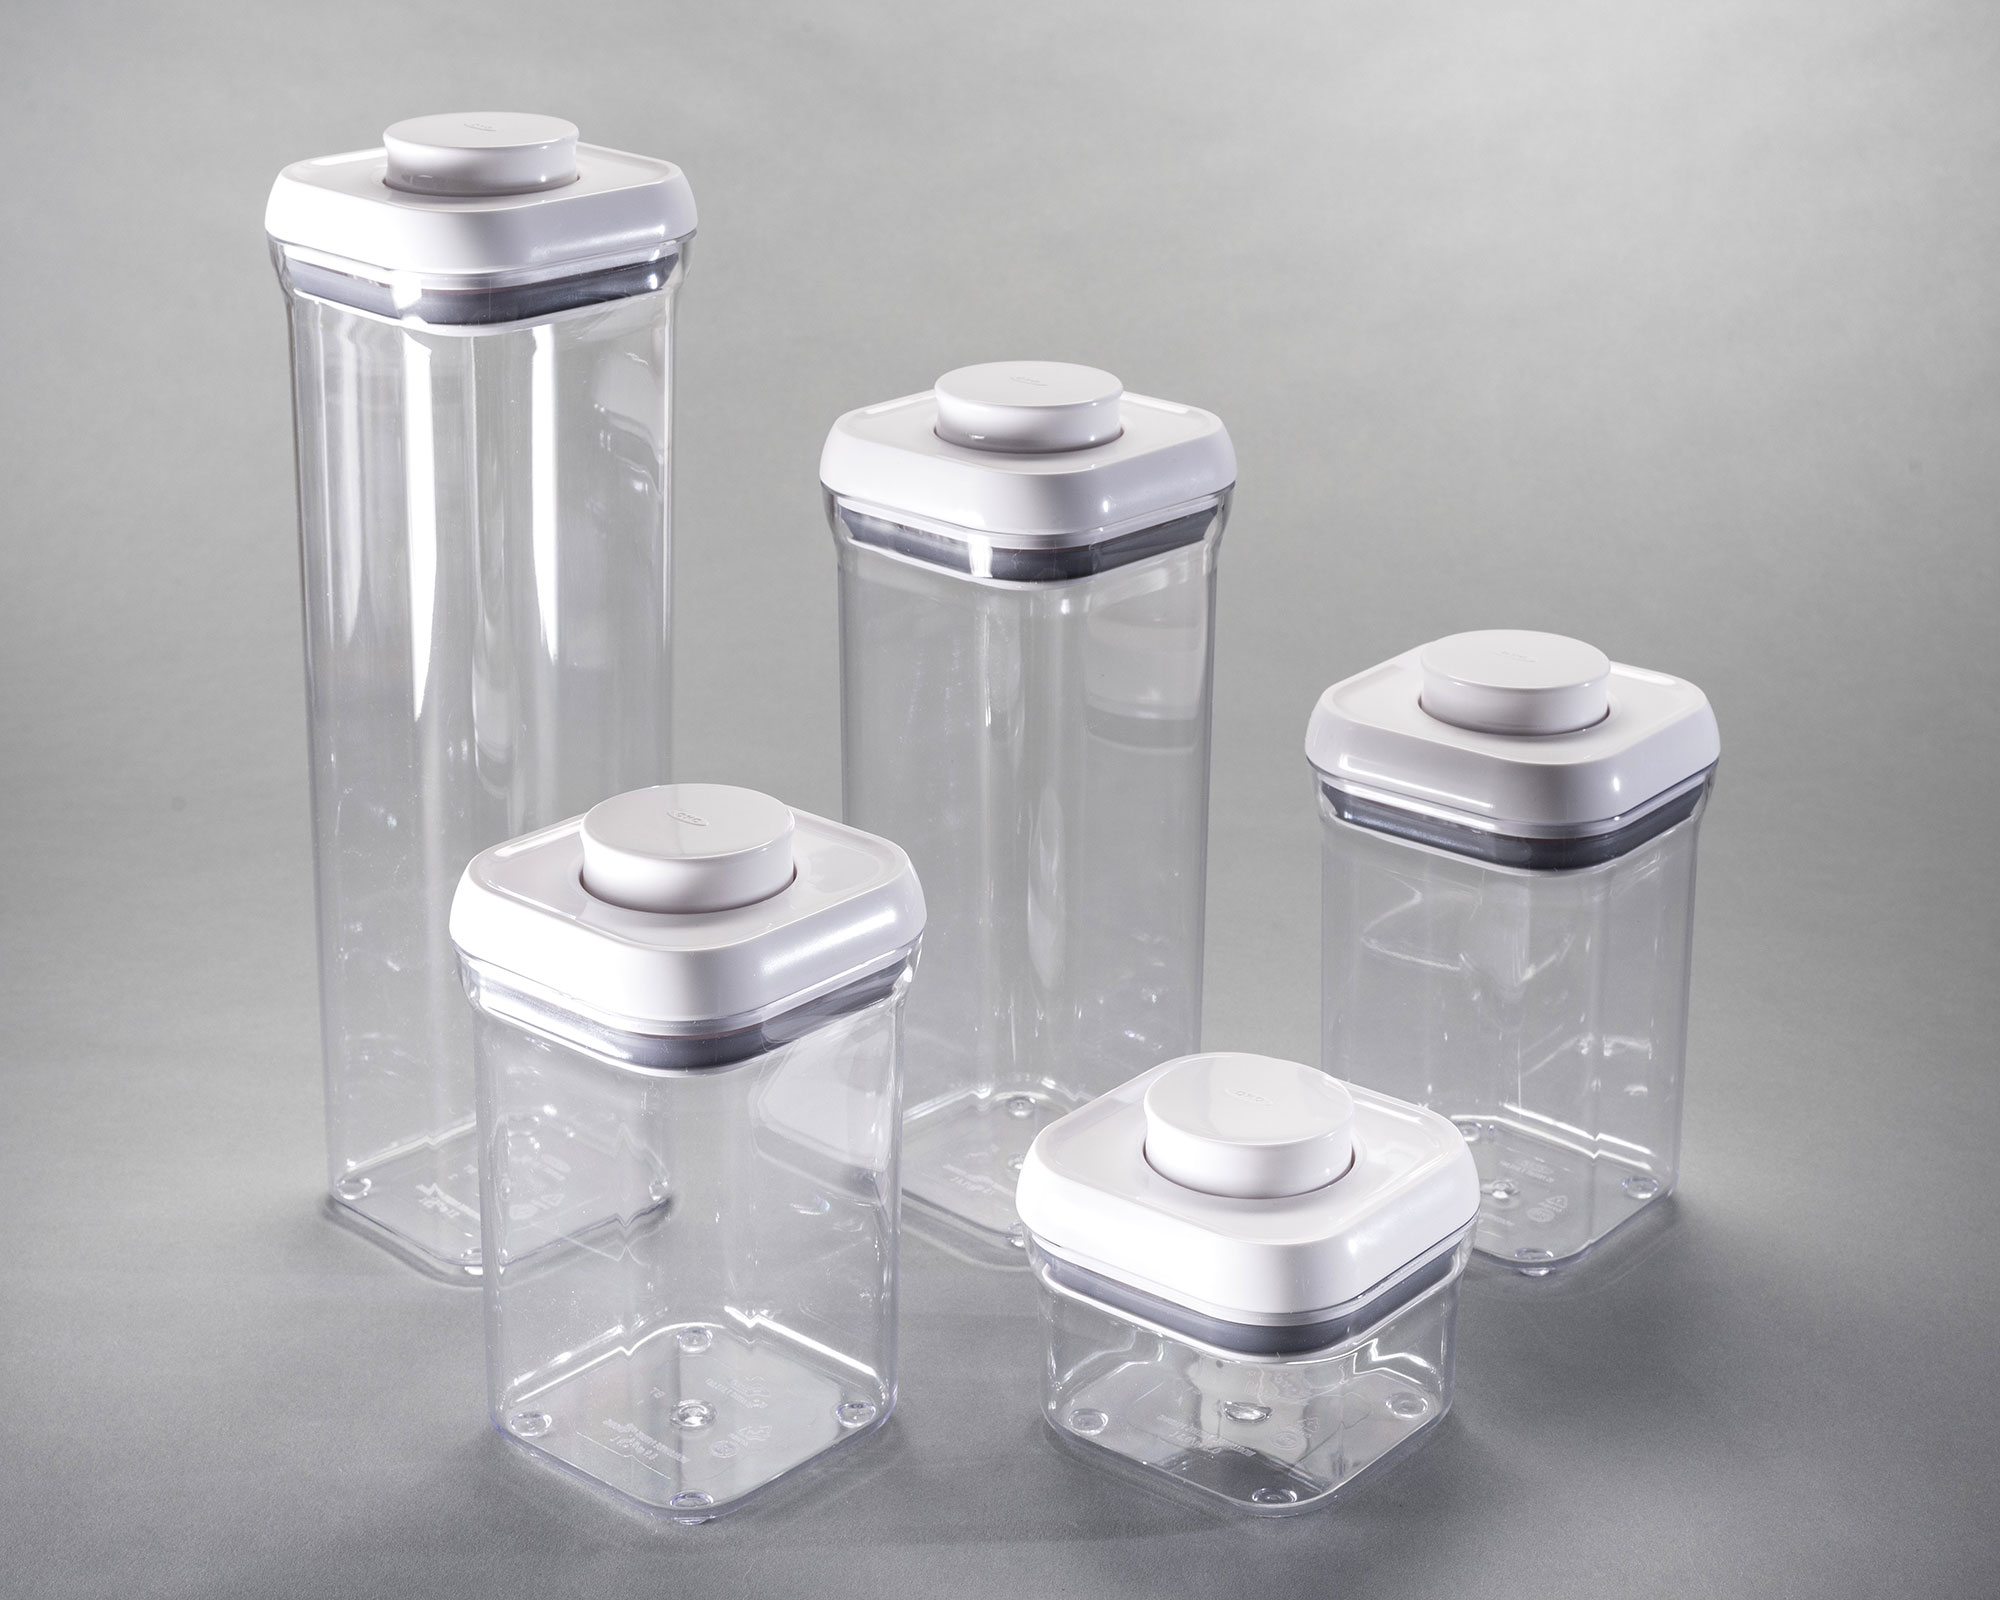 Ensemble de contenants rectangulaires empilables en plastique transparent avec couvercles blancs.